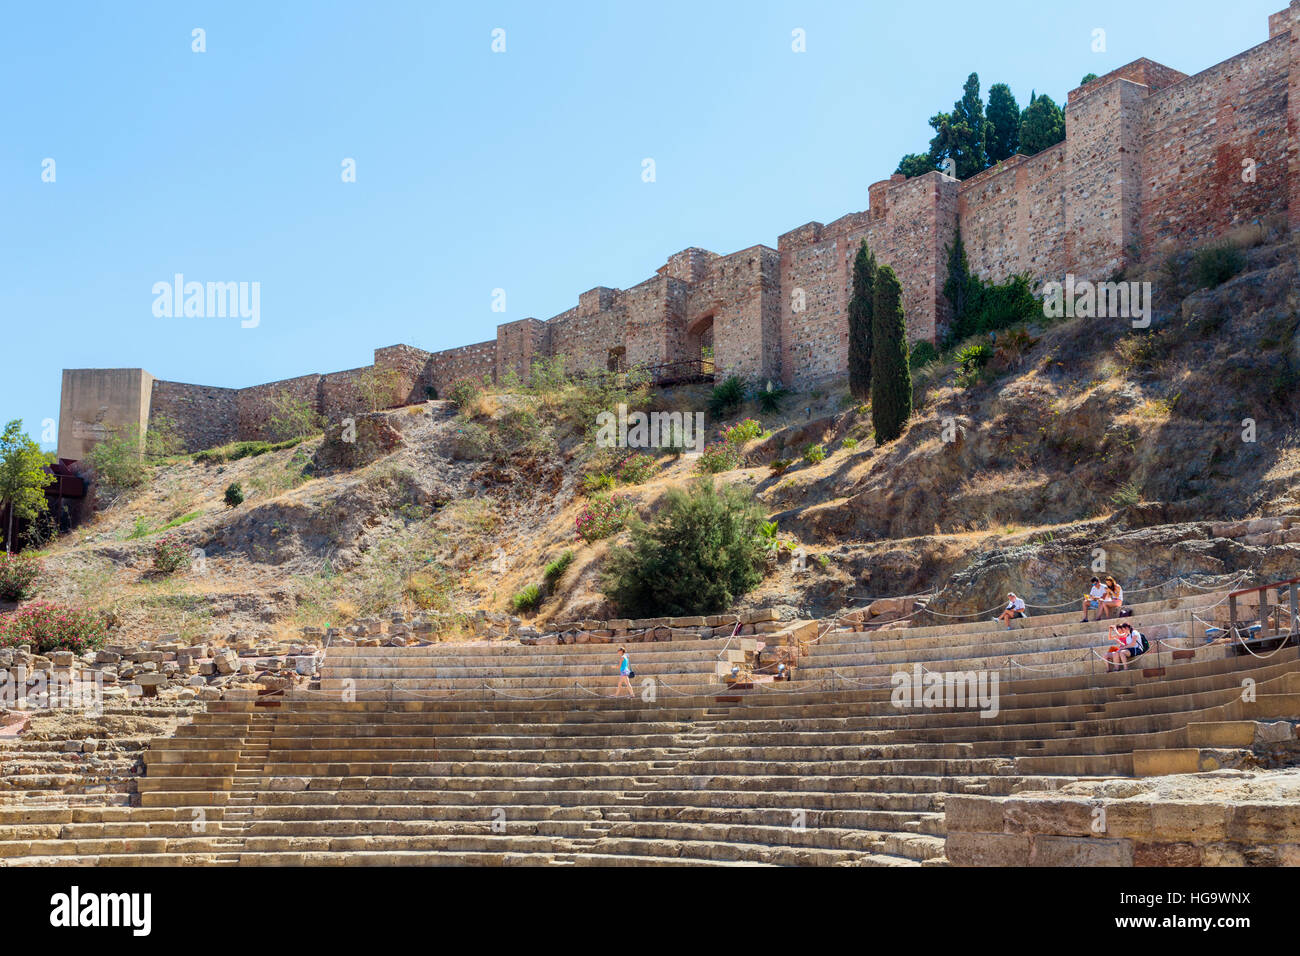 Malaga, Malaga Province, Costa del Sol, Andalusia, southern Spain. Roman theatre and the Moorish alcazaba, or fortress. Stock Photo